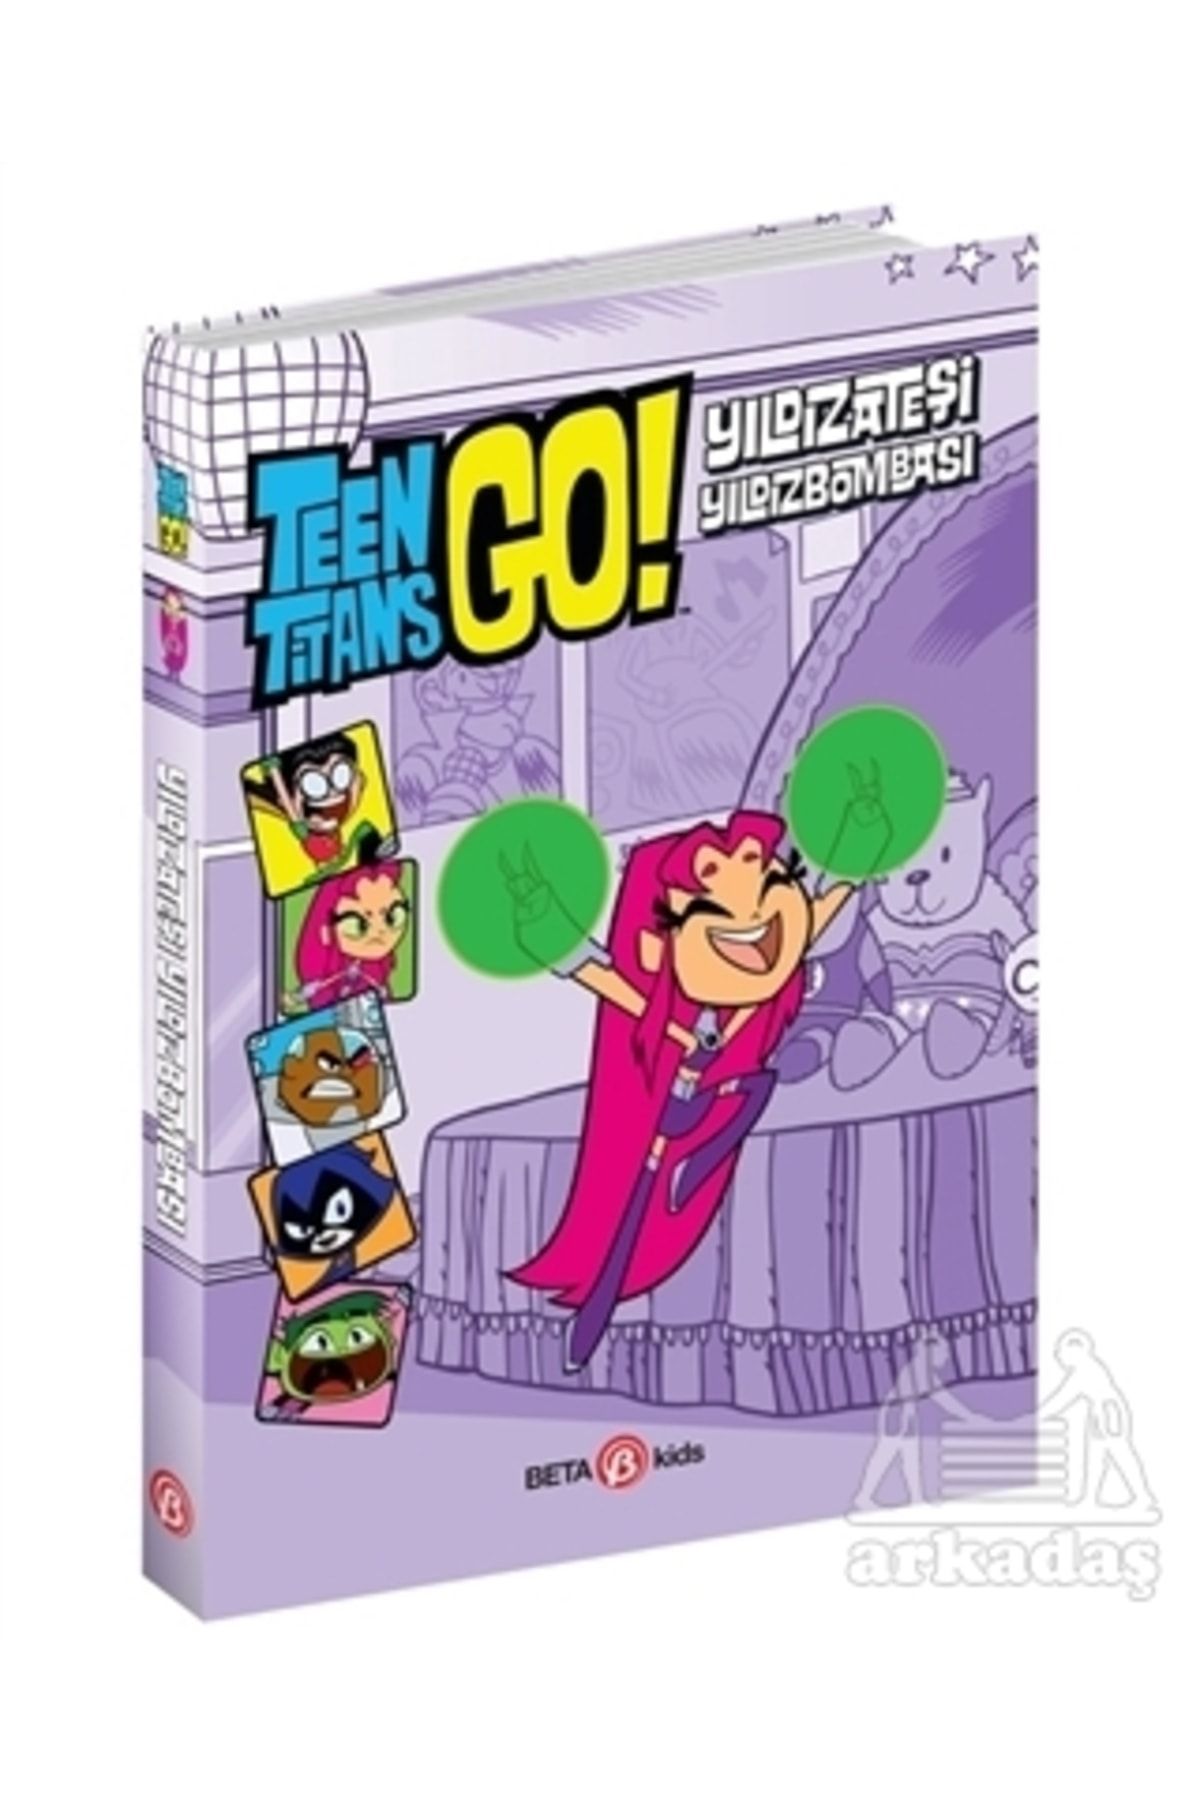 Beta Kids Dc Comics: Teen Titans Go! Yıldızateşi Yıldızbombası